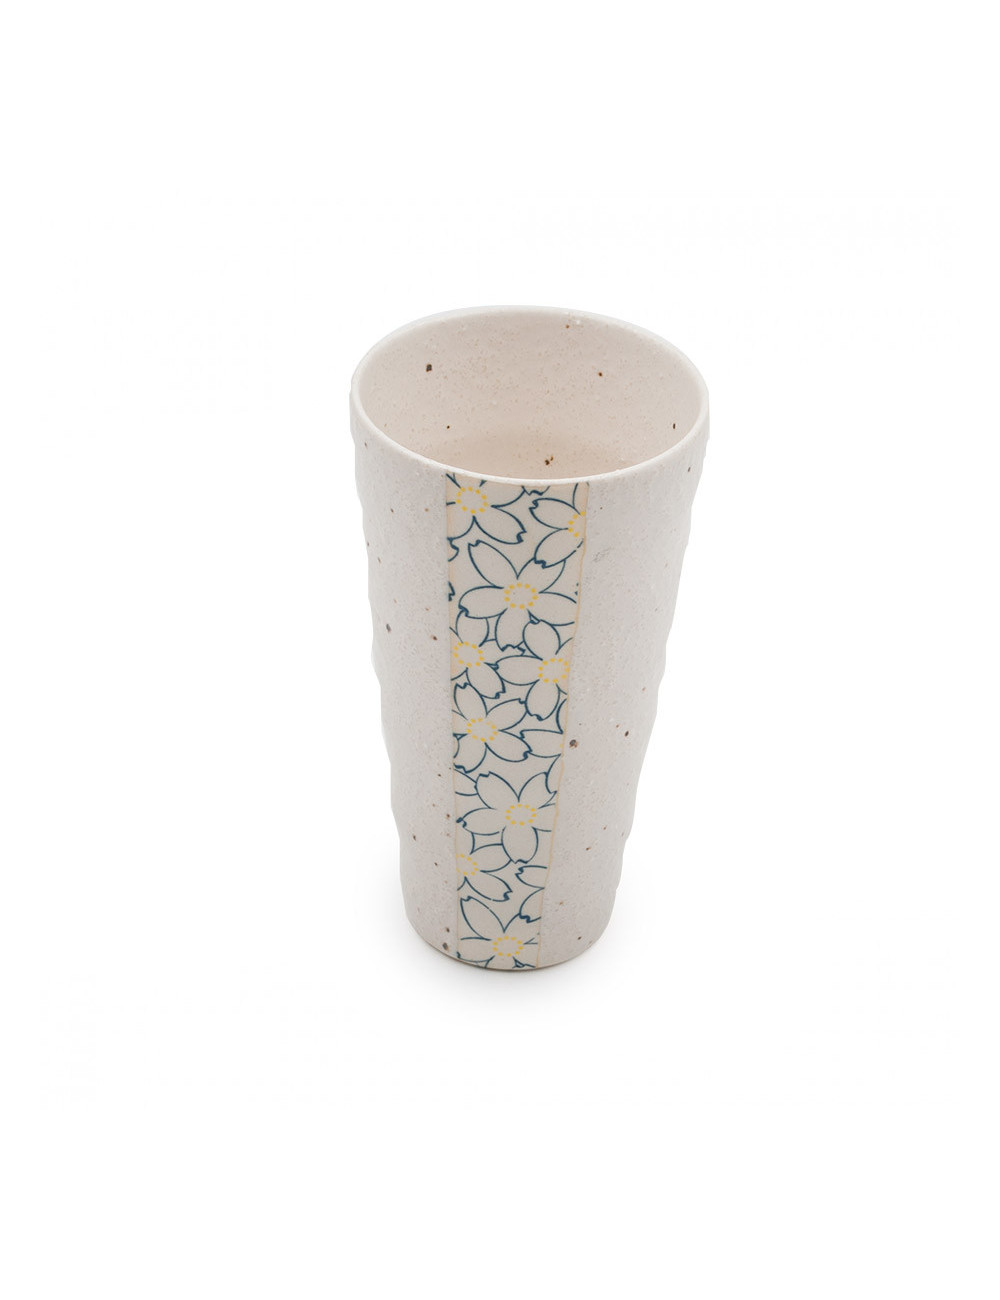 Originale Mug giapponese in ceramica porosa con grandi fiori blu - La Pianta del Tè Shop online